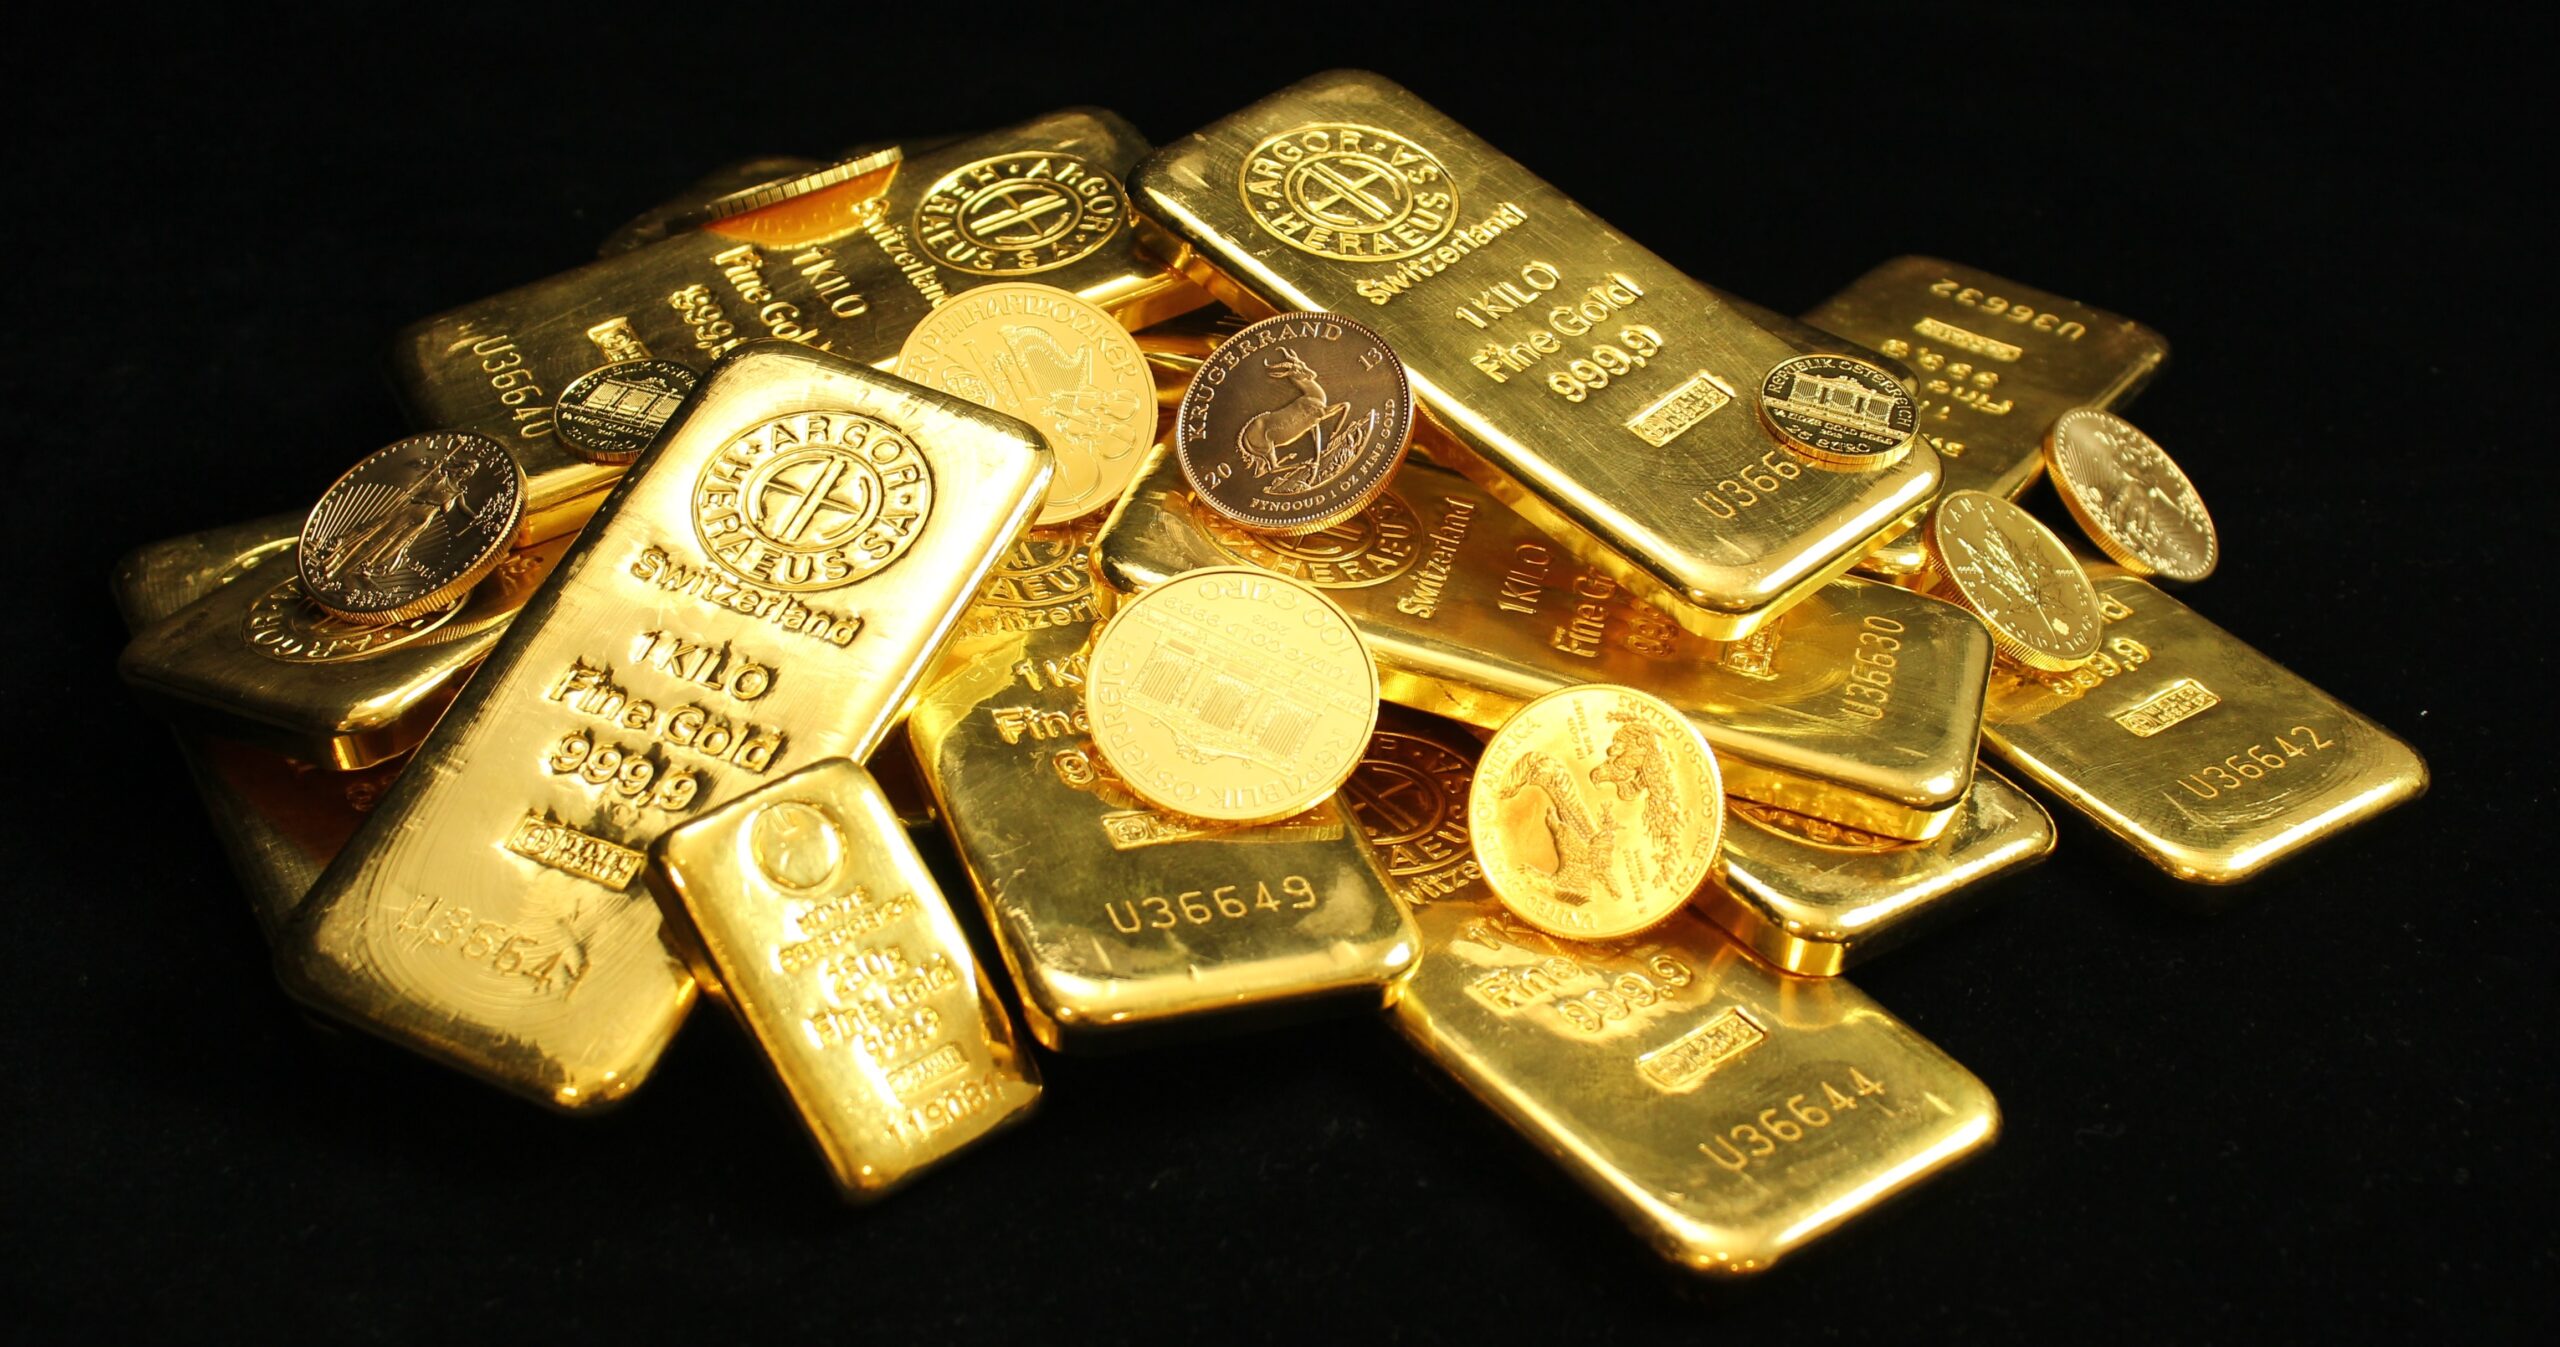 Auvesta klärt auf: Gold ist beliebt wie selten – doch noch immer gibt es rund um das Edelmetall viele Missverständnisse